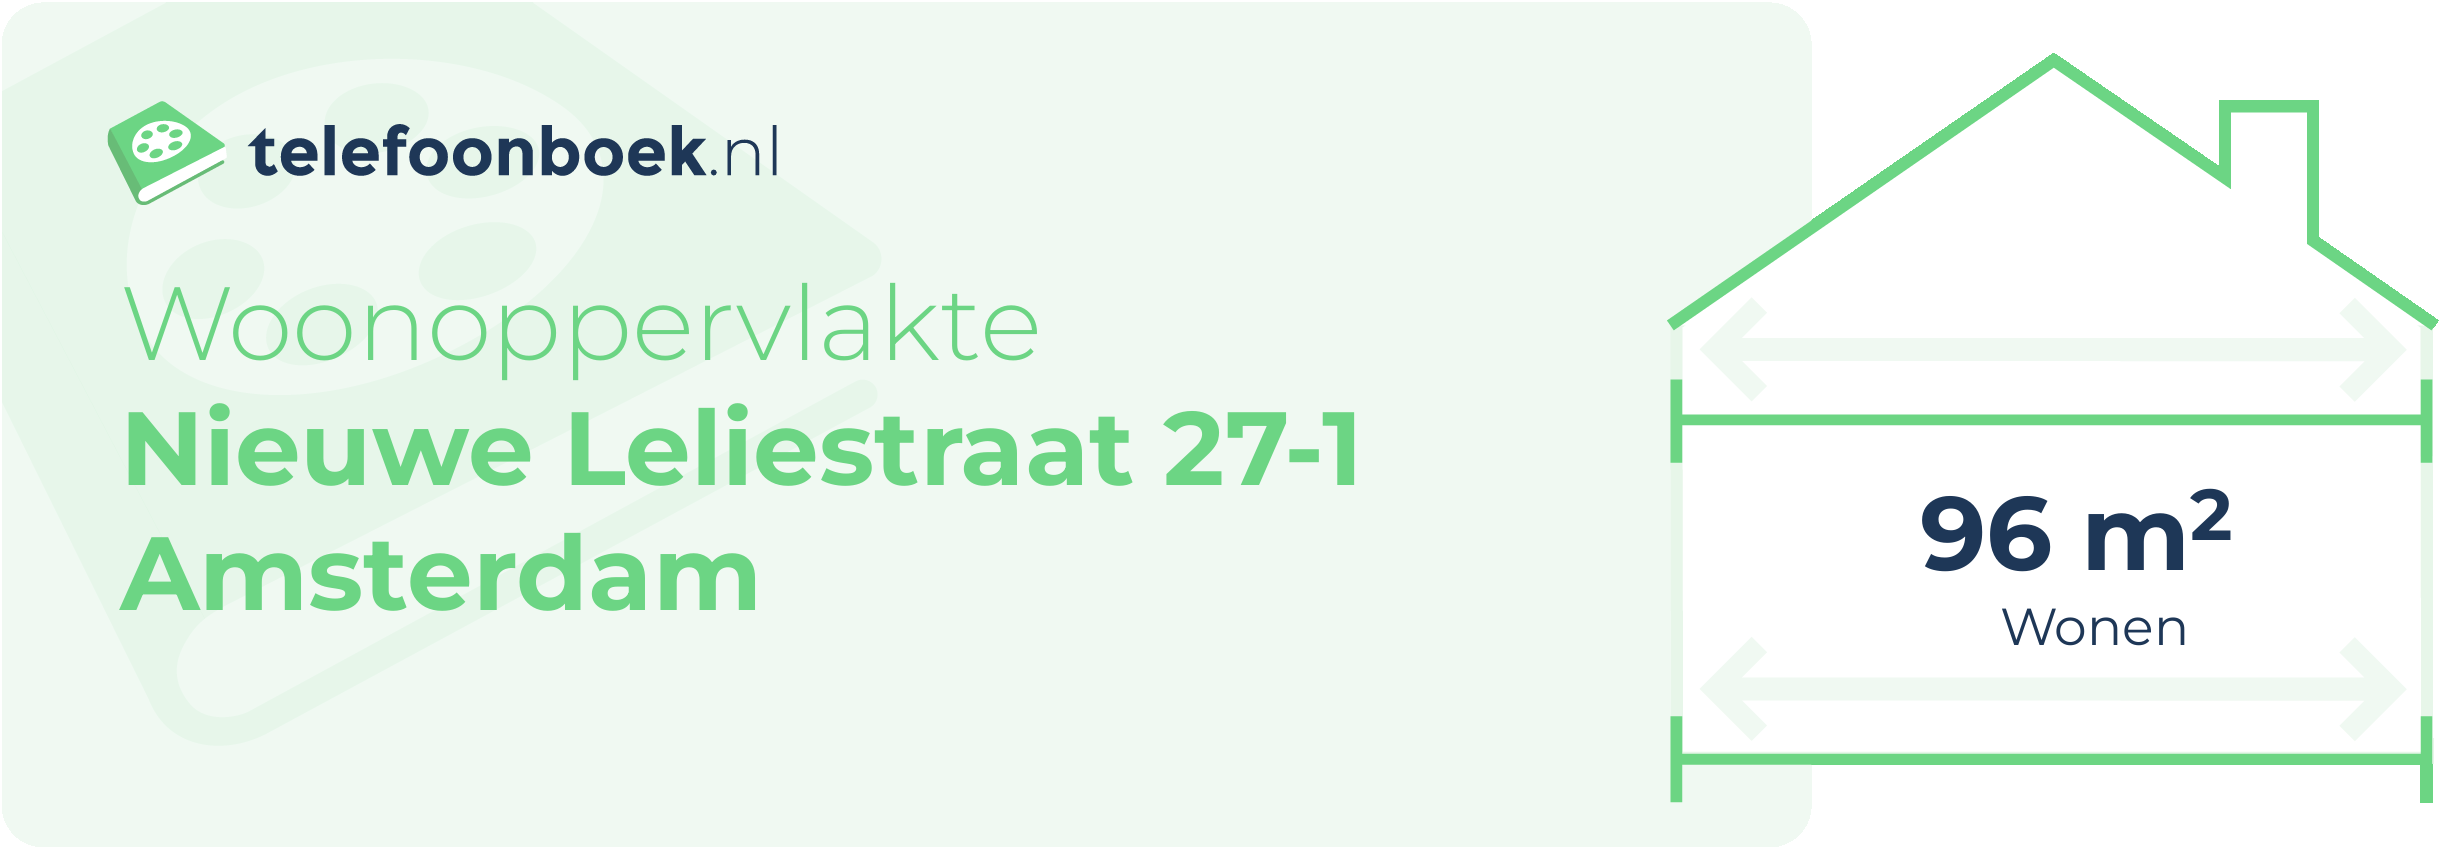 Woonoppervlakte Nieuwe Leliestraat 27-1 Amsterdam